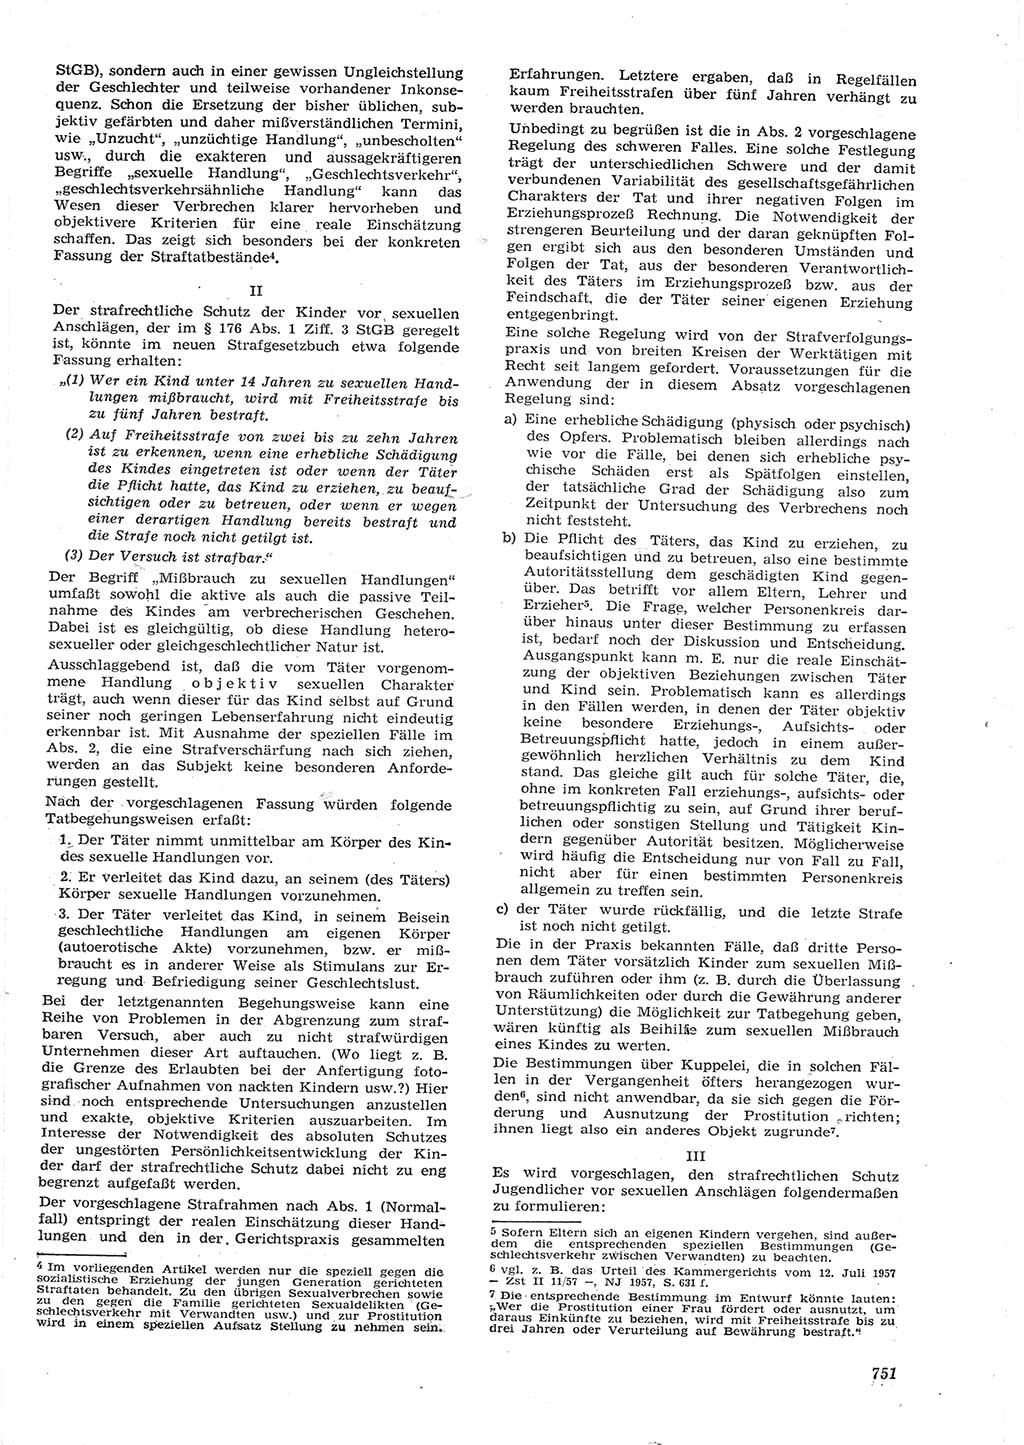 Neue Justiz (NJ), Zeitschrift für Recht und Rechtswissenschaft [Deutsche Demokratische Republik (DDR)], 15. Jahrgang 1961, Seite 751 (NJ DDR 1961, S. 751)